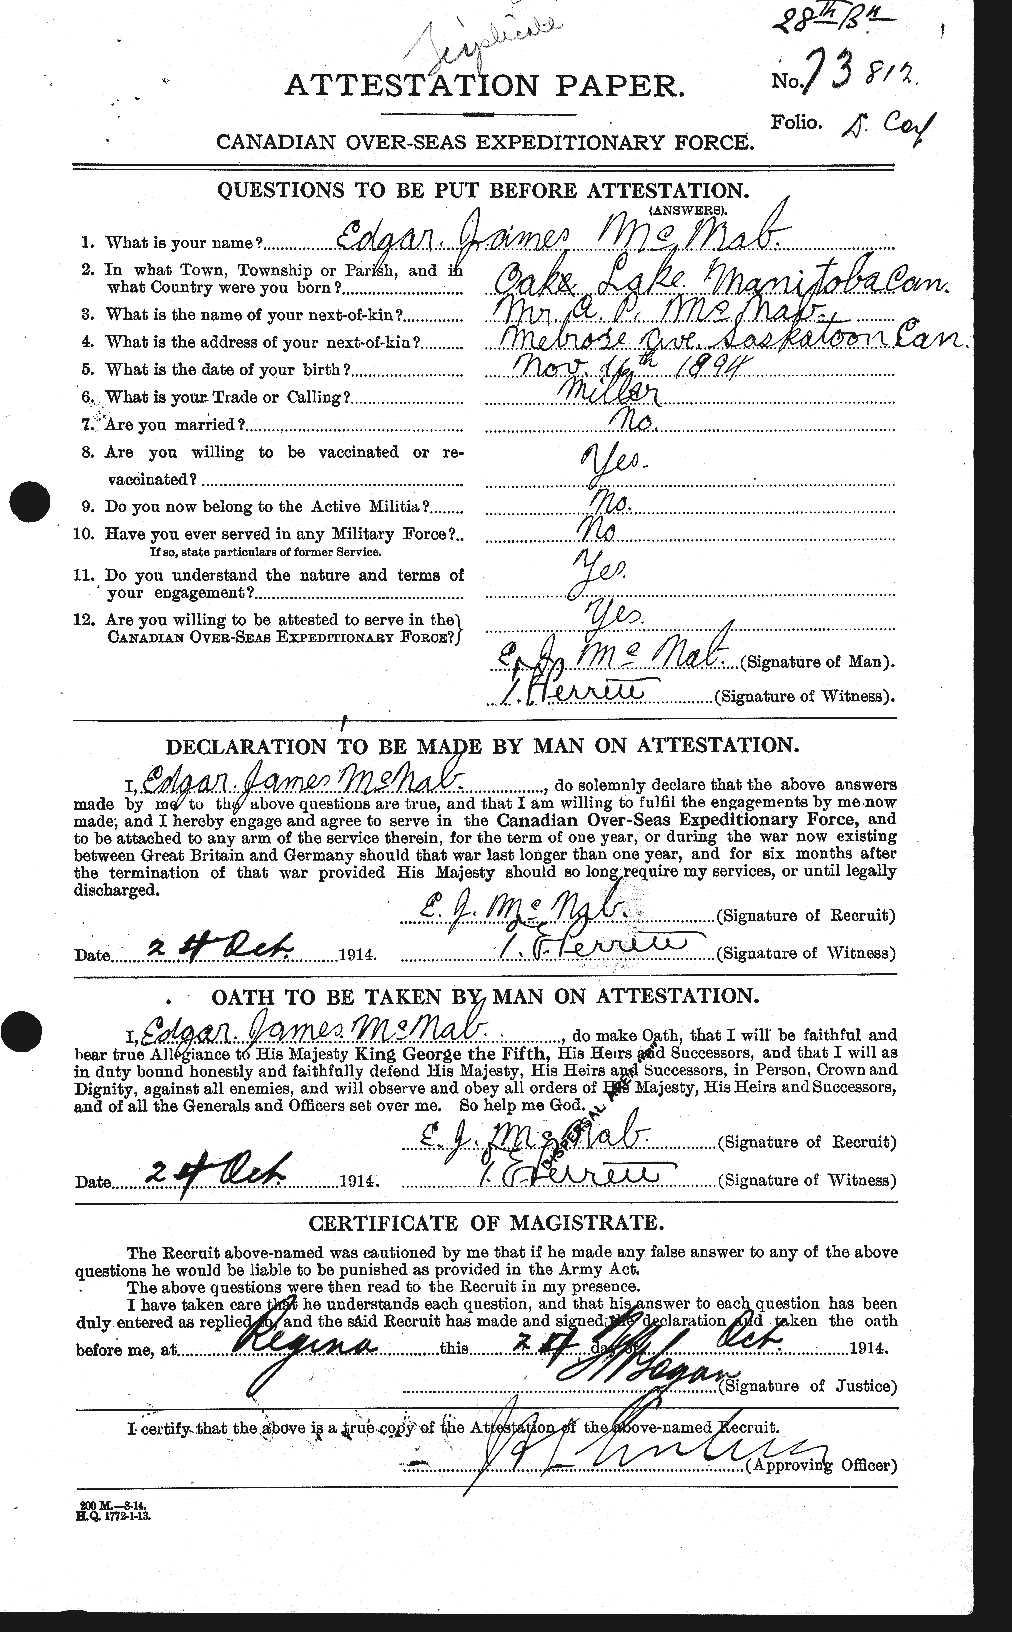 Dossiers du Personnel de la Première Guerre mondiale - CEC 539543a